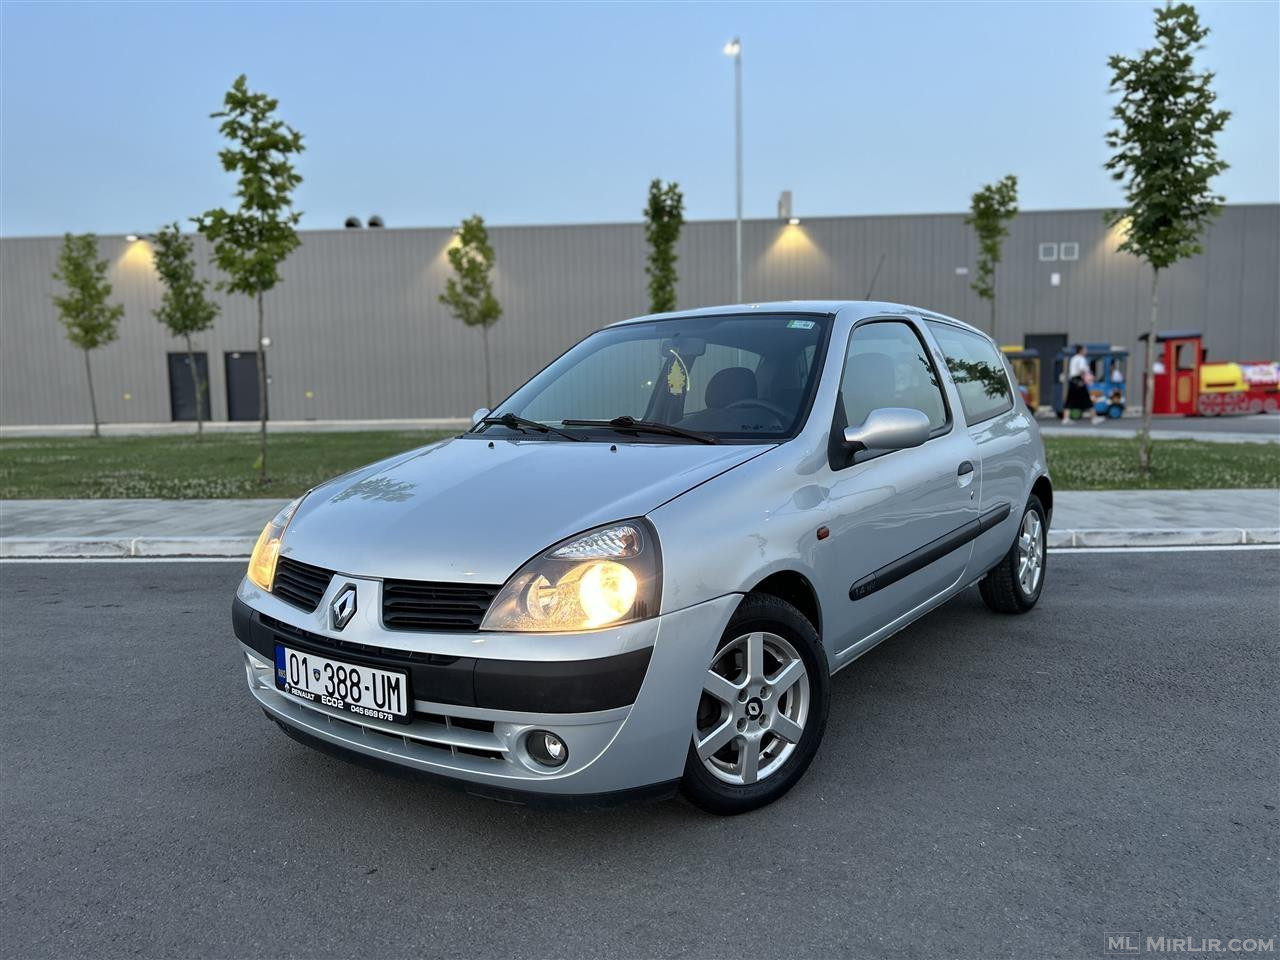 Renault Clio full automatic